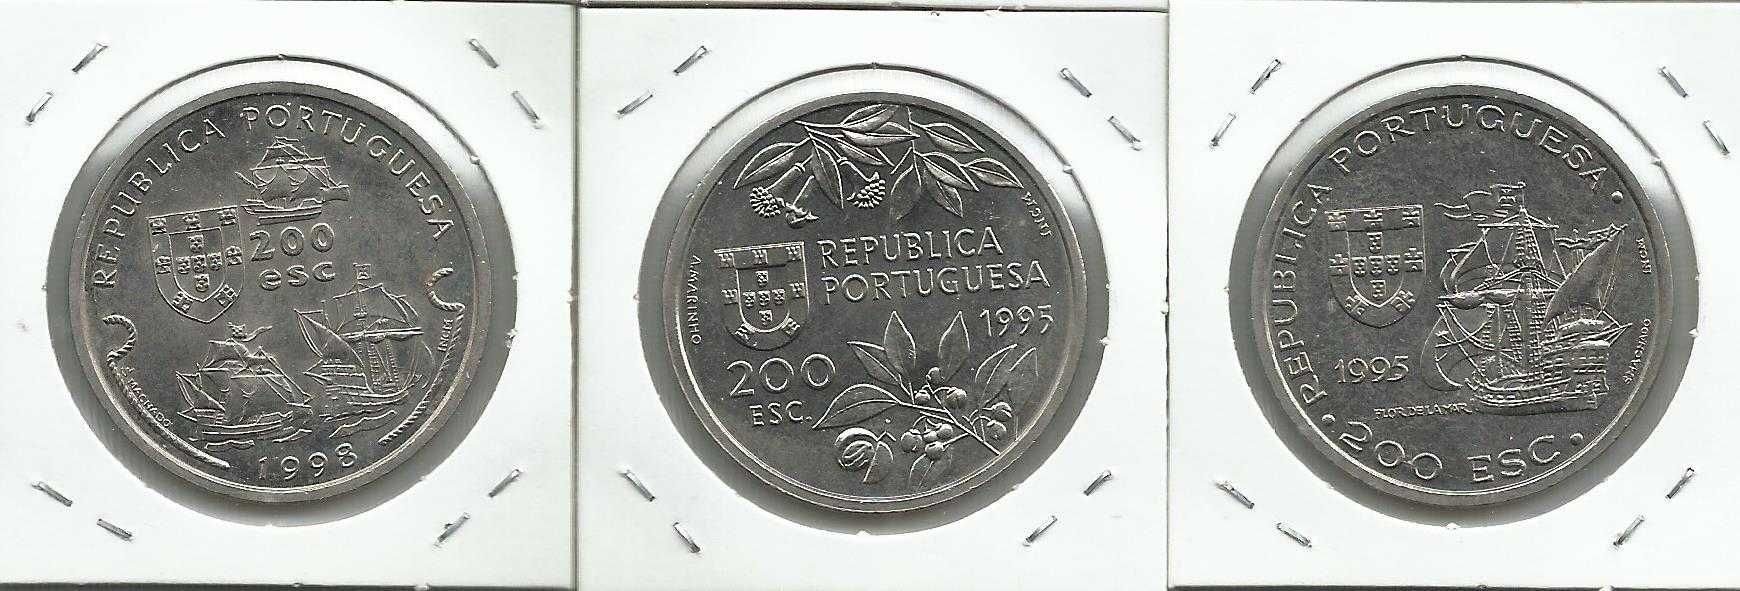 9 moedas portuguesas comemorativas de 200$00 em Cupro-Níquel